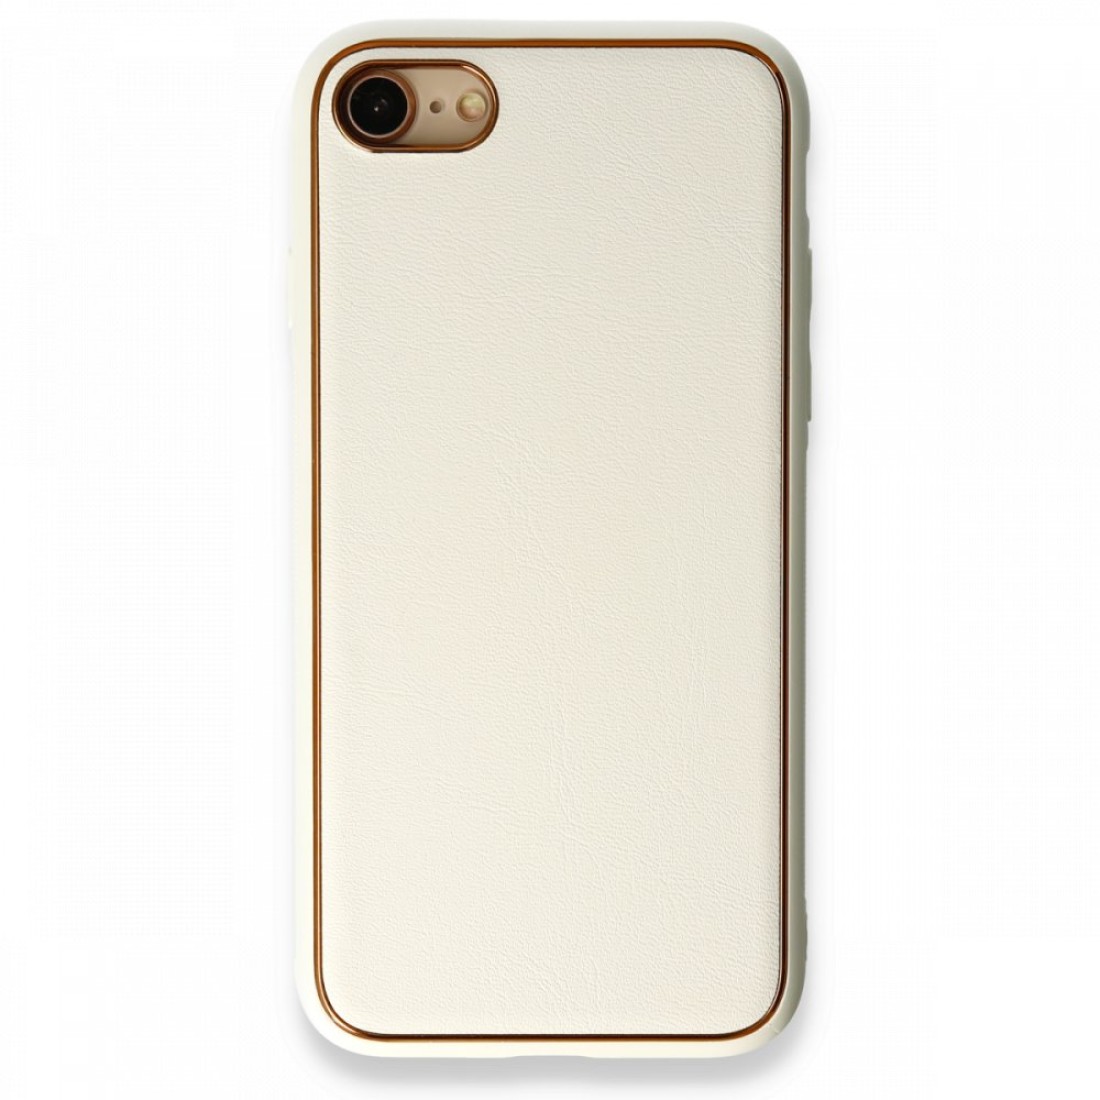 Apple iPhone 8 Kılıf Coco Deri Silikon Kapak - Beyaz